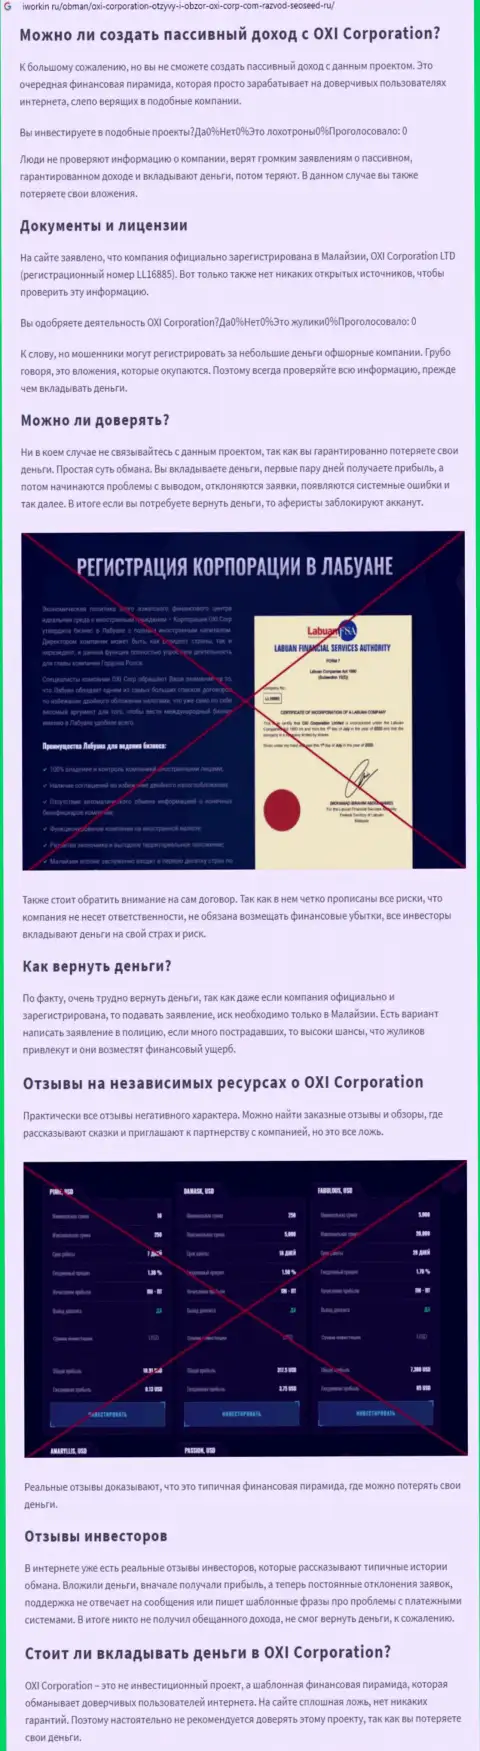 Об вложенных в организацию Окси Корпорейшн финансовых средствах можете и не вспоминать, прикарманивают все до последнего рубля (обзор)